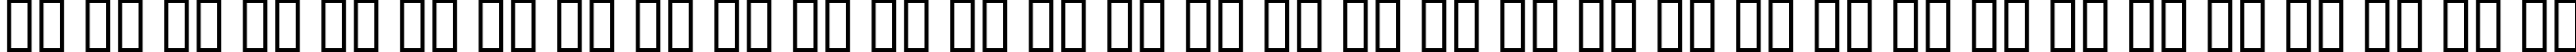 Пример написания русского алфавита шрифтом Aftershock Debris Condensed